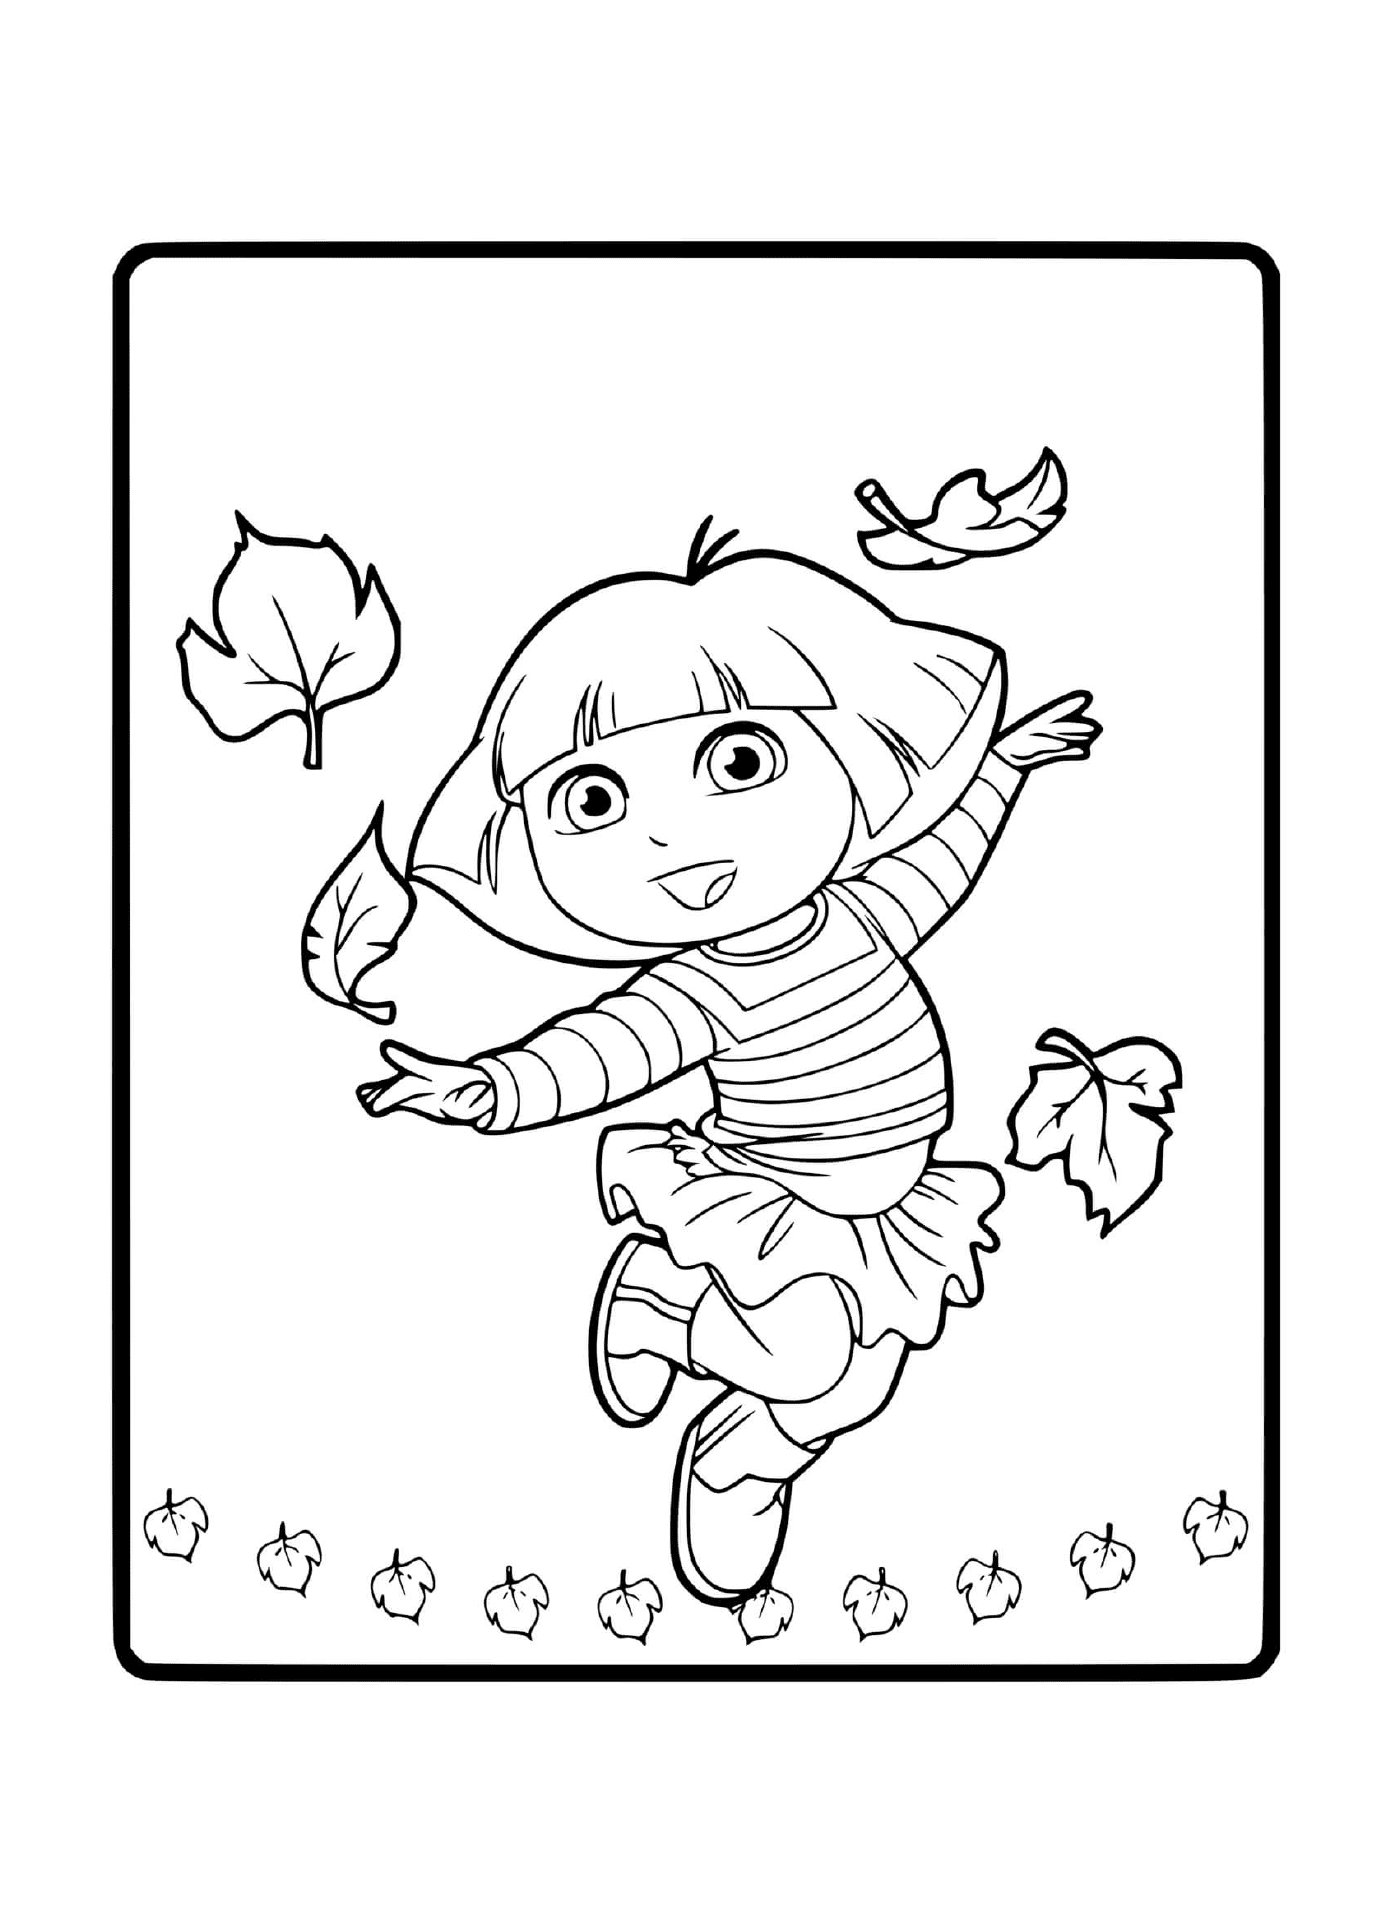  Dora si diverte con le foglie d'autunno 